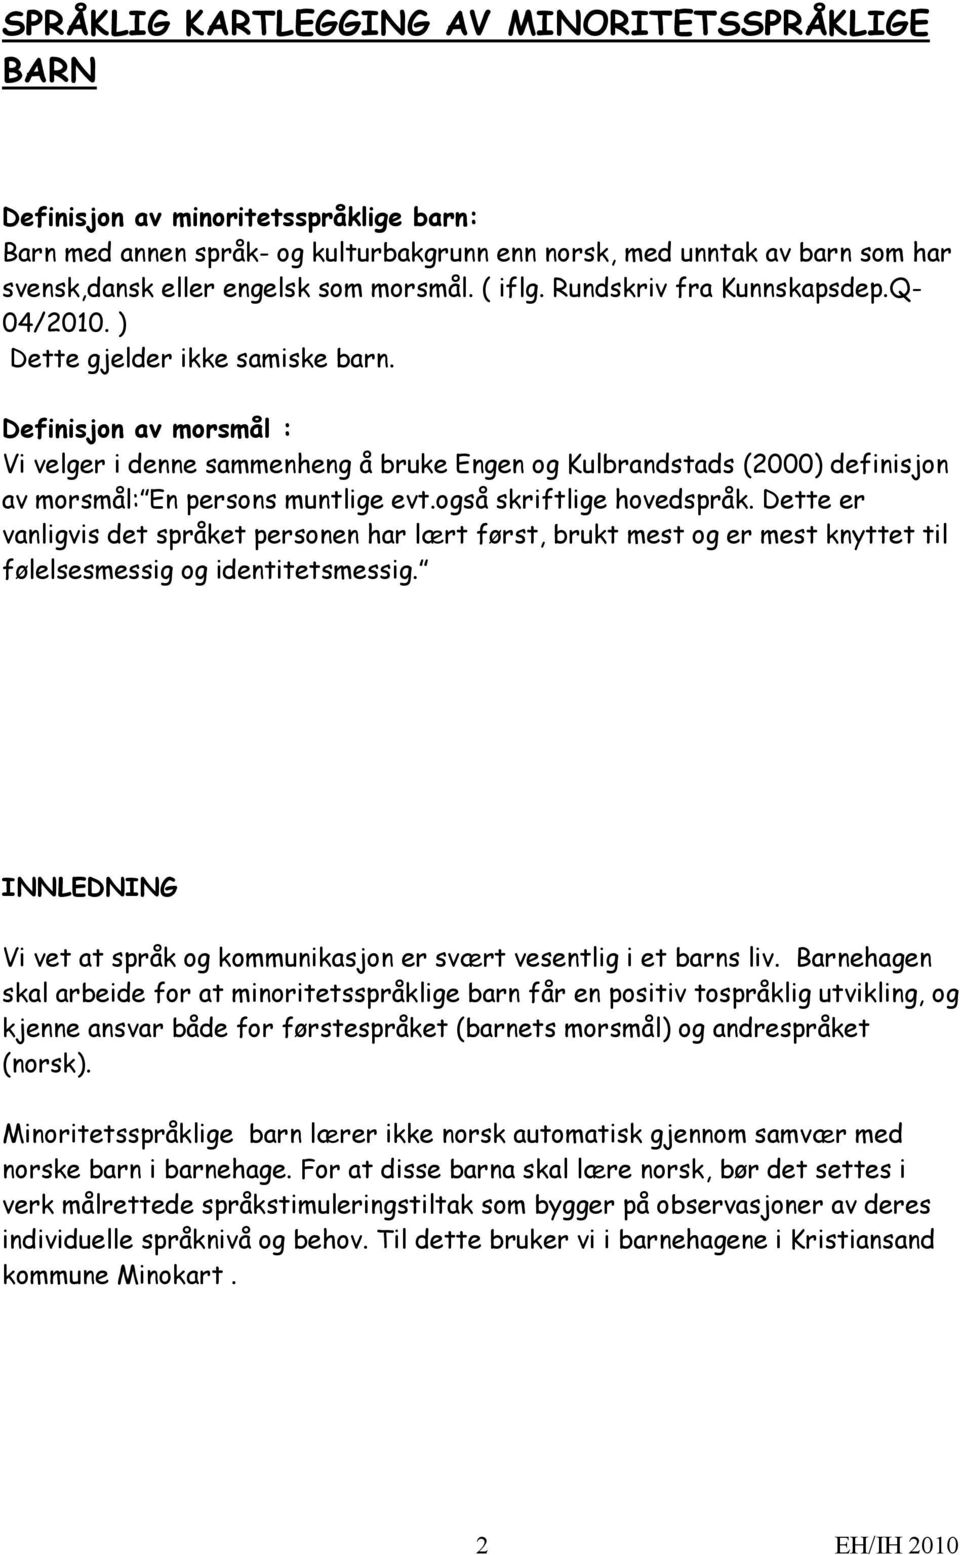 Definisjon av morsmål : Vi velger i denne sammenheng å bruke Engen og Kulbrandstads (2000) definisjon av morsmål: En persons muntlige evt.også skriftlige hovedspråk.